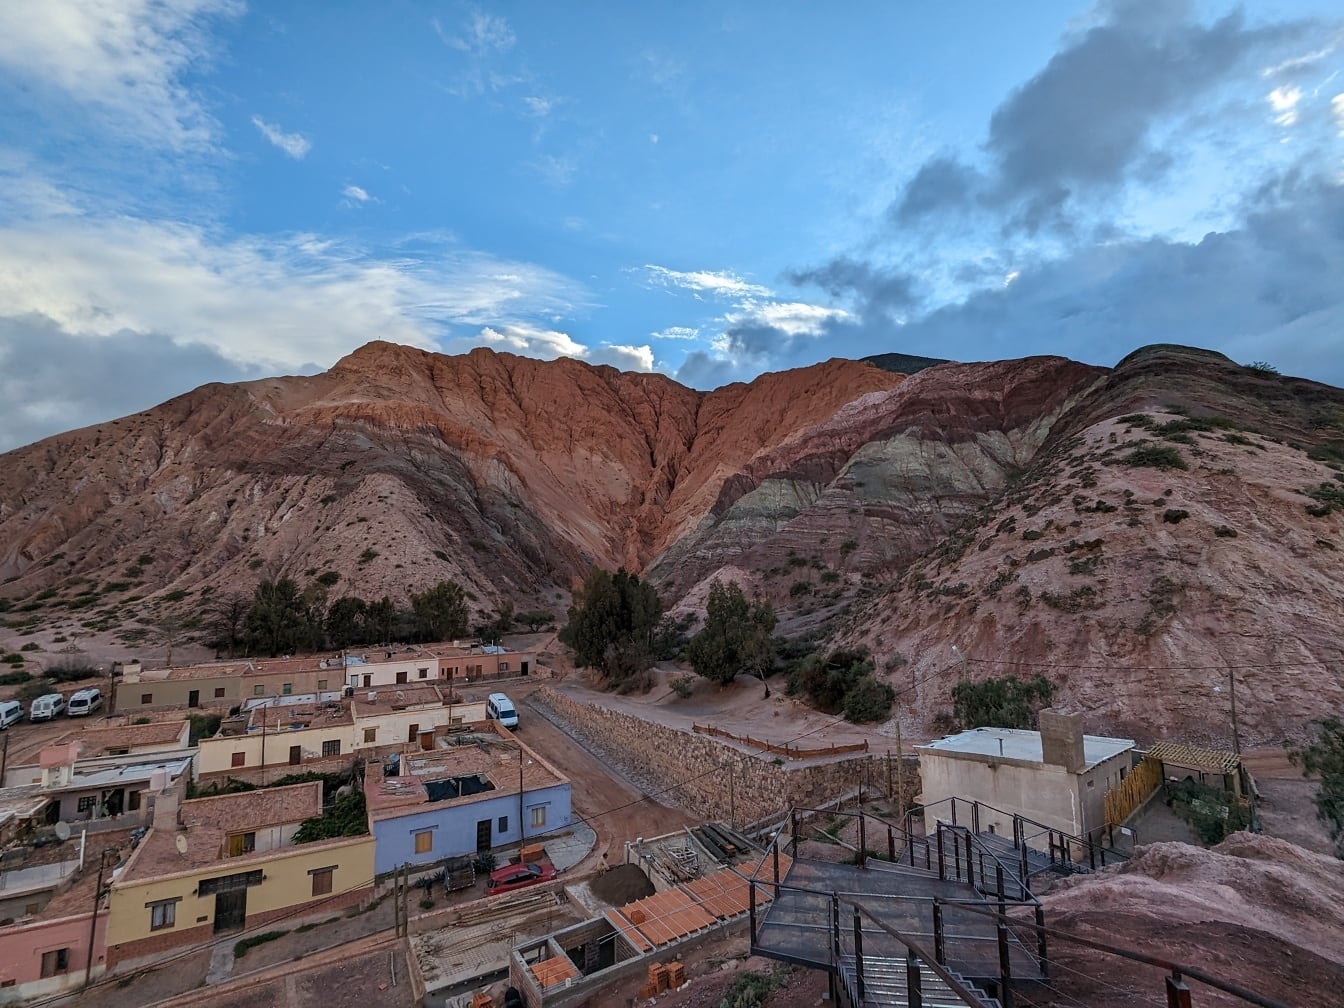 Ngôi làng Purmamarca trong thung lũng Quebrada de Humahuaca ở Argentina với những ngọn núi ở phía sau